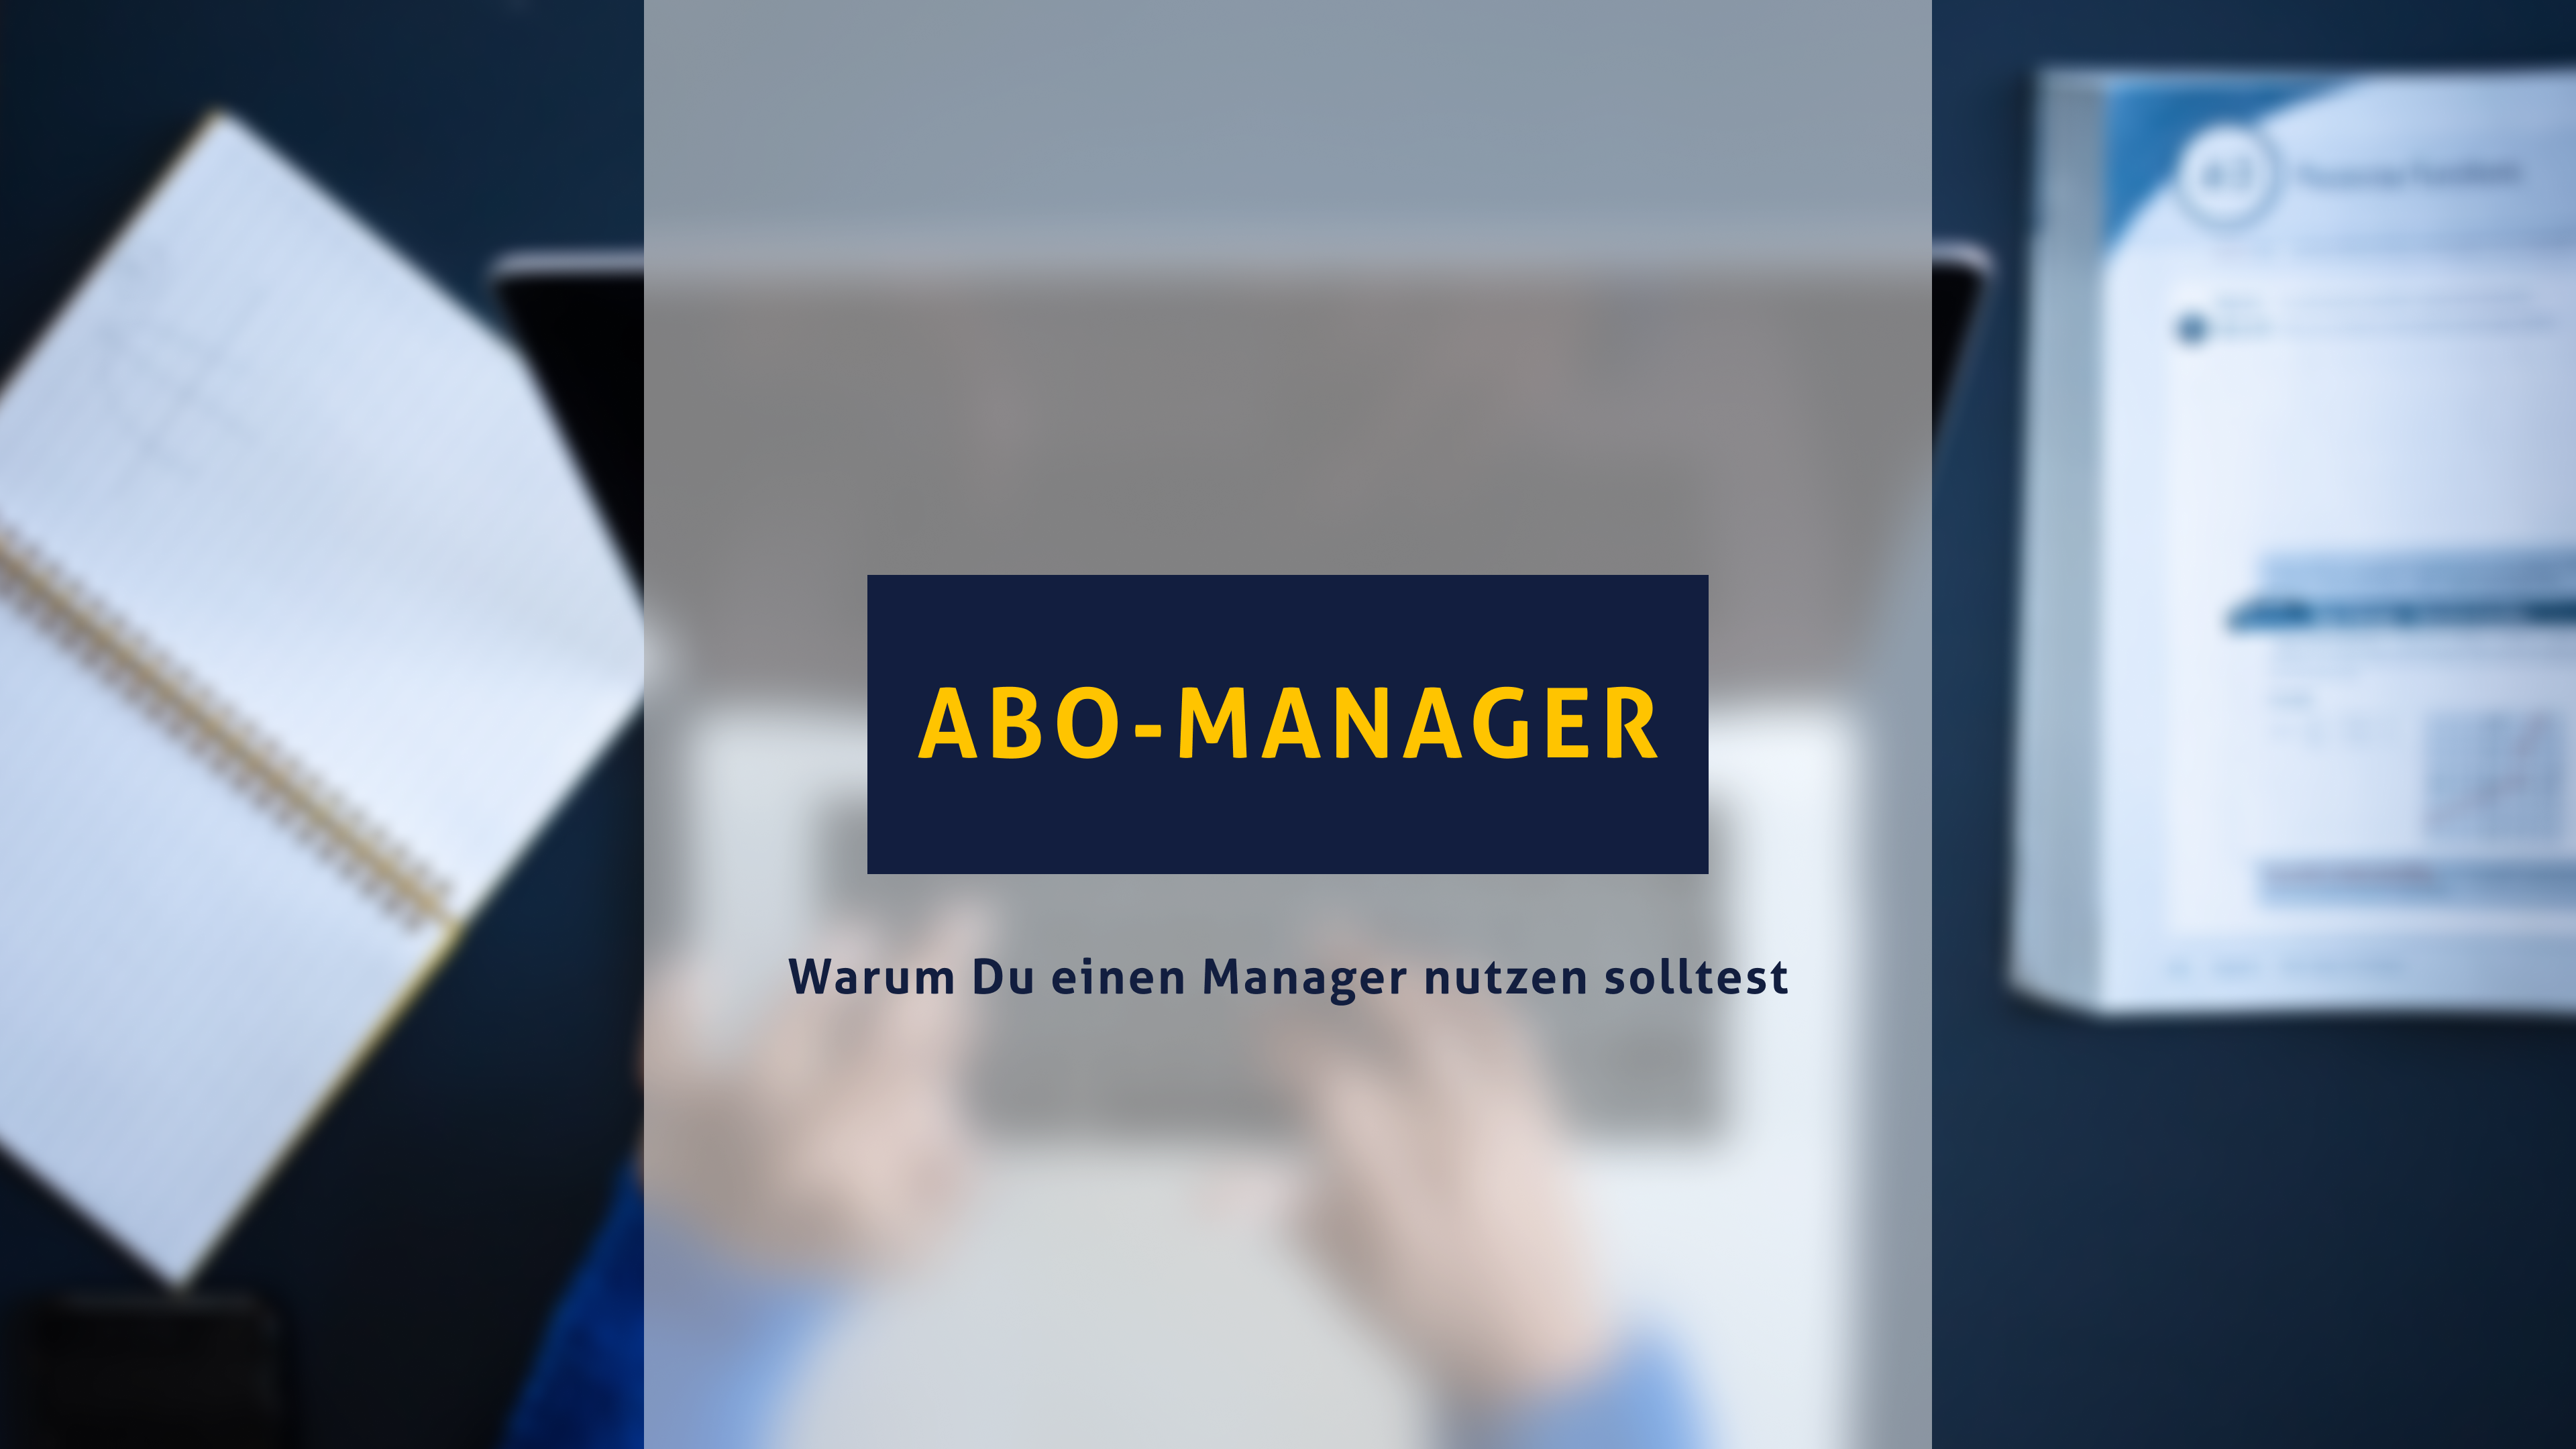 Hast du viele Abos und Verträge? 5 Gründe für die Nutzung eines Abo-Managers.